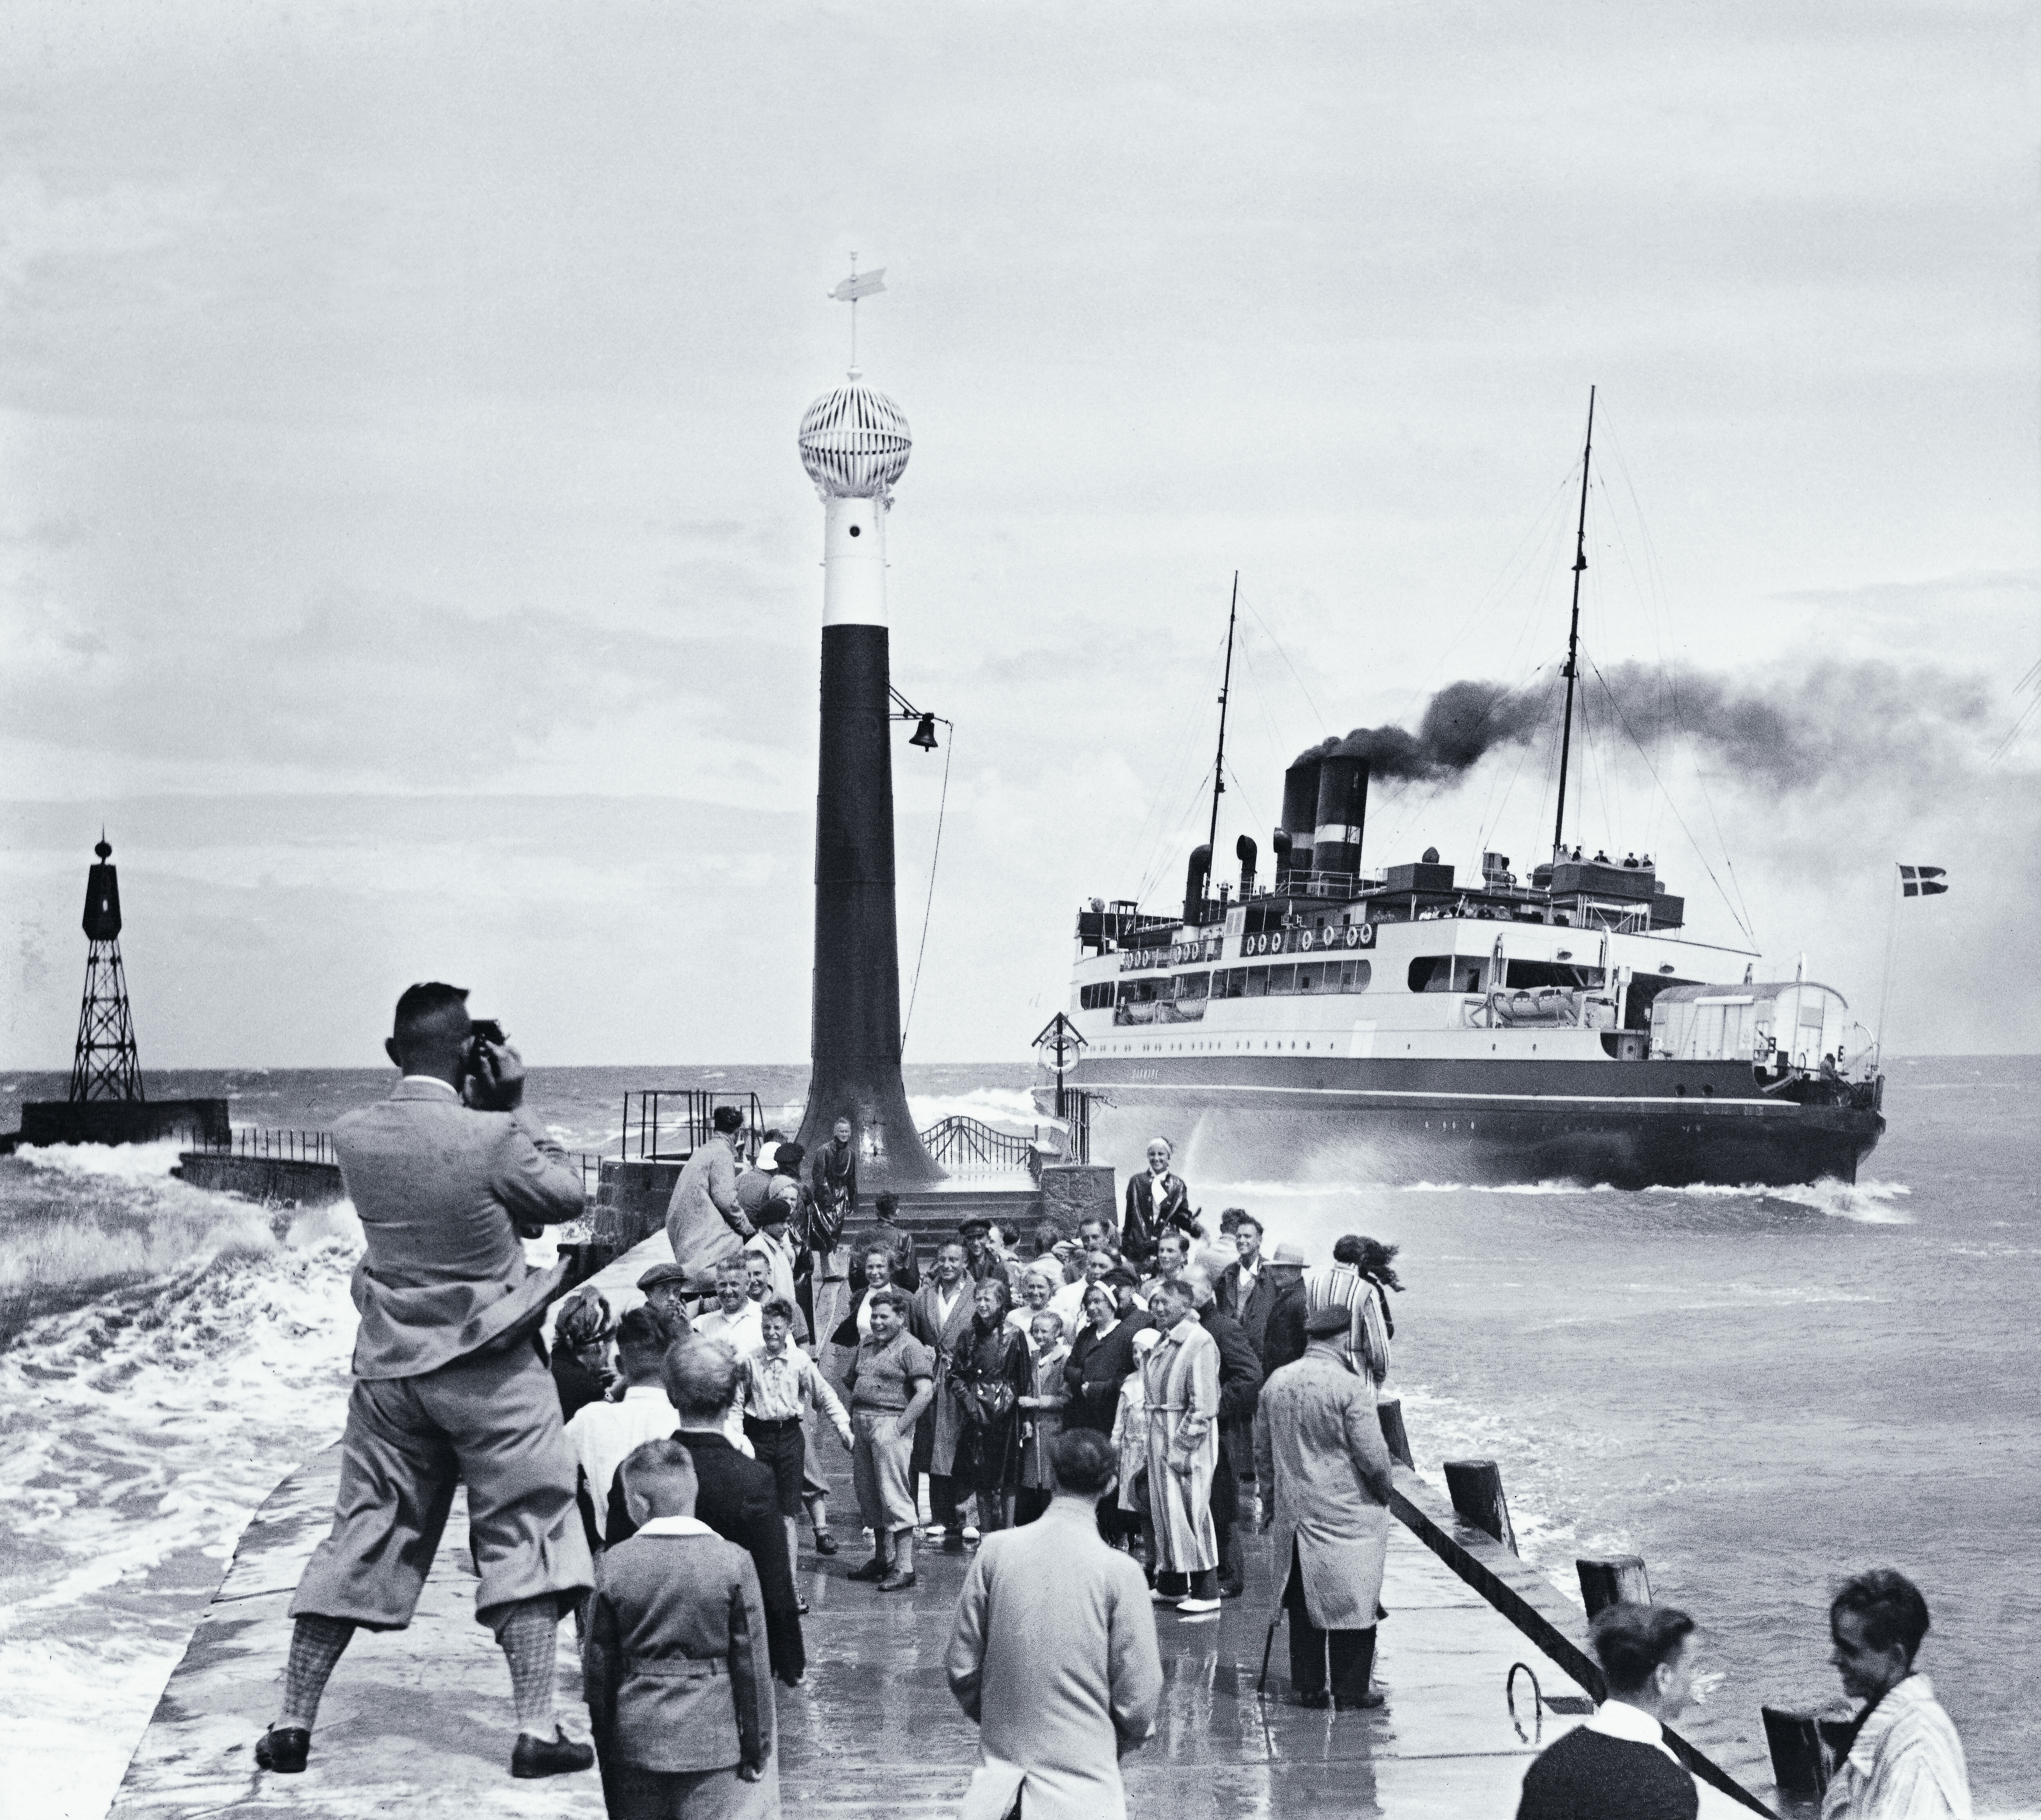 Dampfærgen Danmark under indsejling til Warnemünde en dag i 1938 Foto: Karl Eschenburg